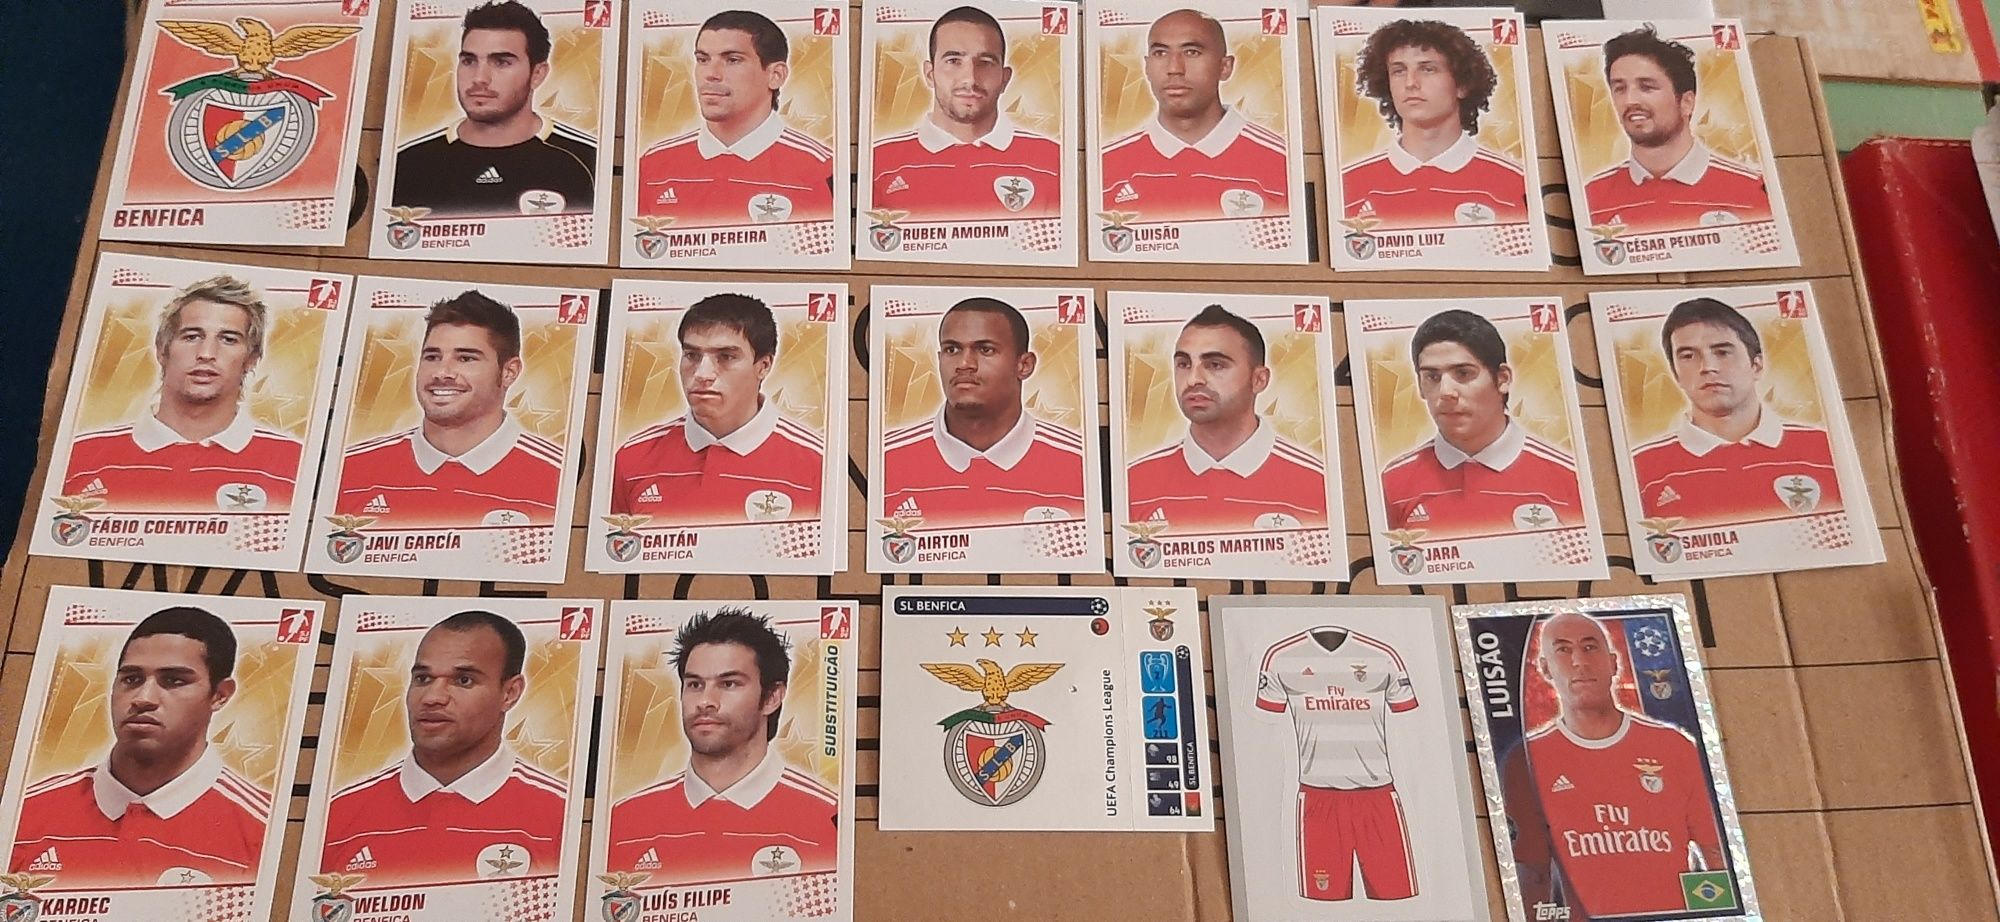 118 cromos diferentes Benfica/SLB desde época 2009/10 até 21